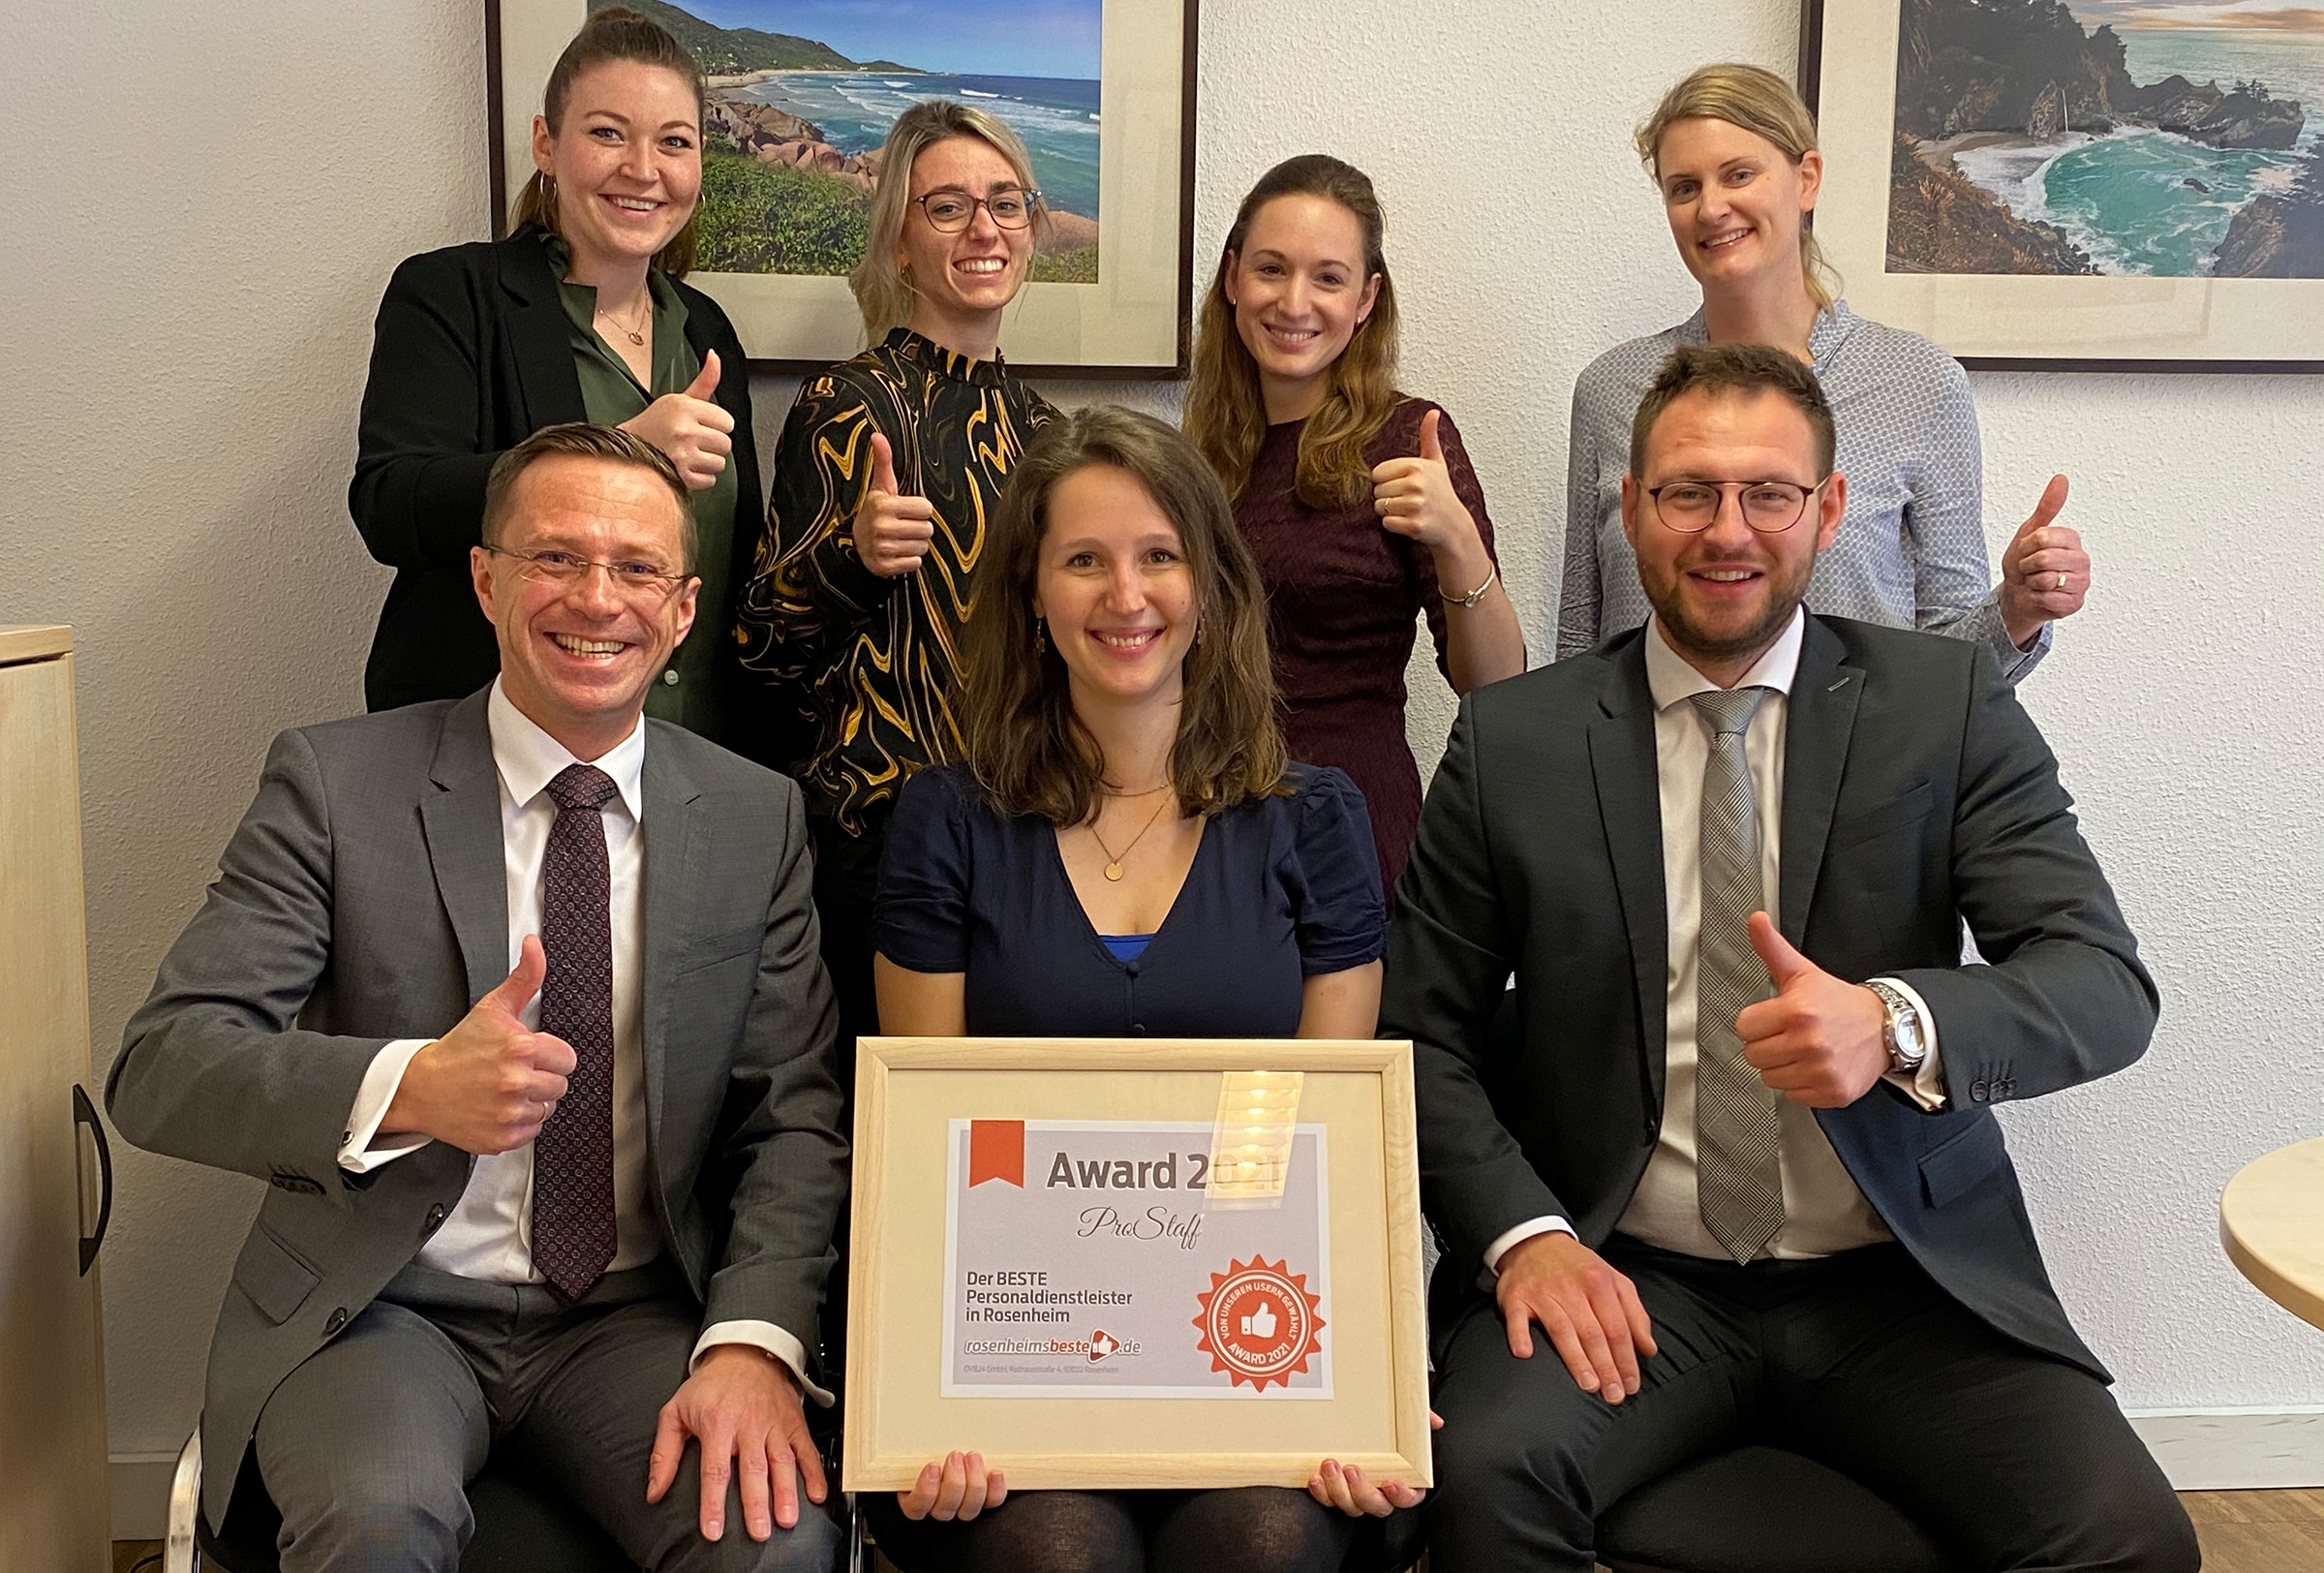 7 MitarbeiterInnen von ProStaff freuen sich über den Award als bester Personaldienstleister in Rosenheim